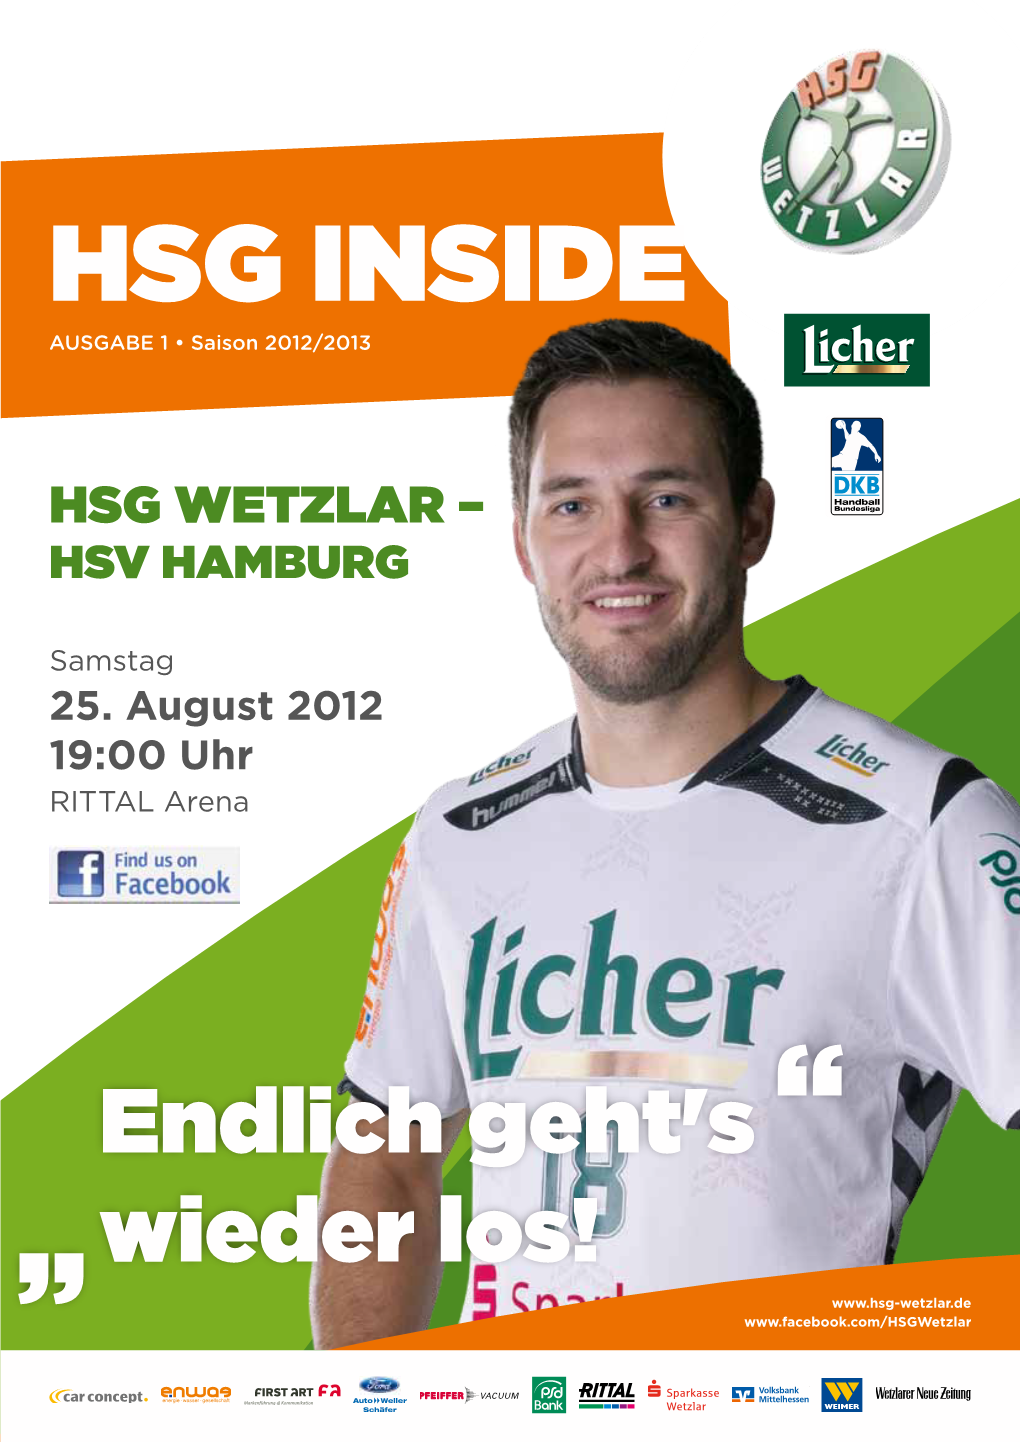 HSG Inside Ausgabe 1